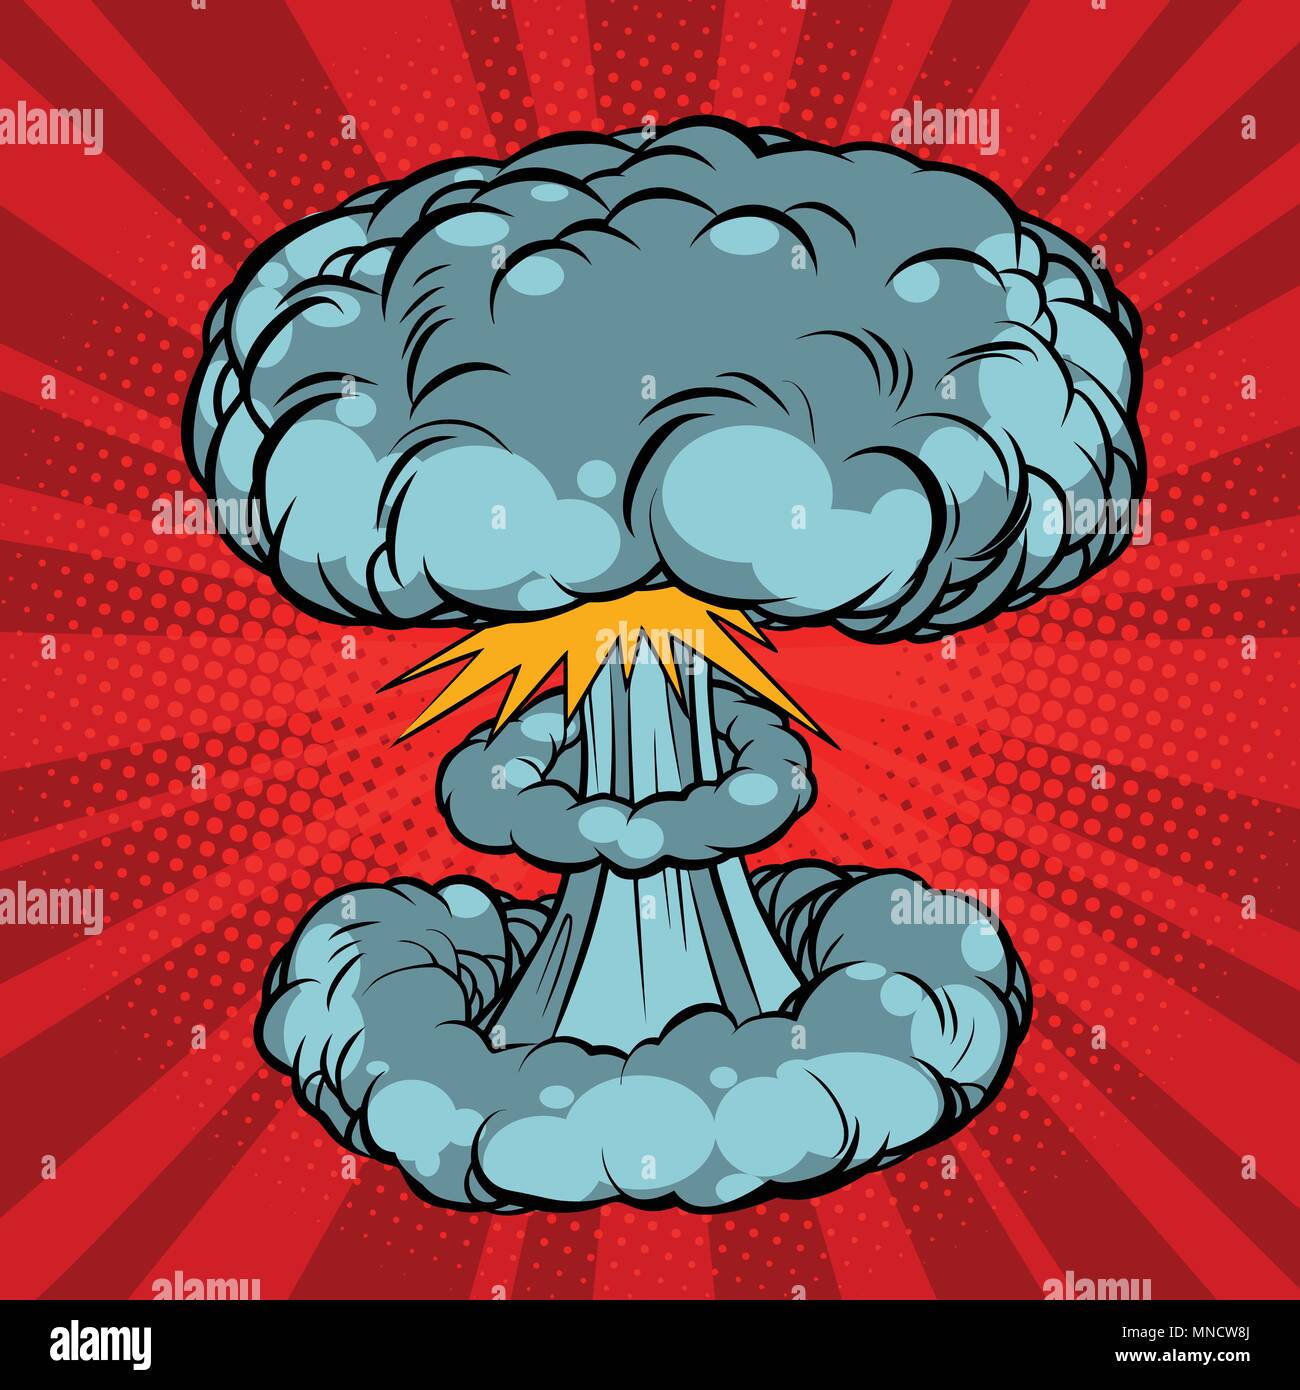 Esplosione nucleare, guerra Illustrazione Vettoriale